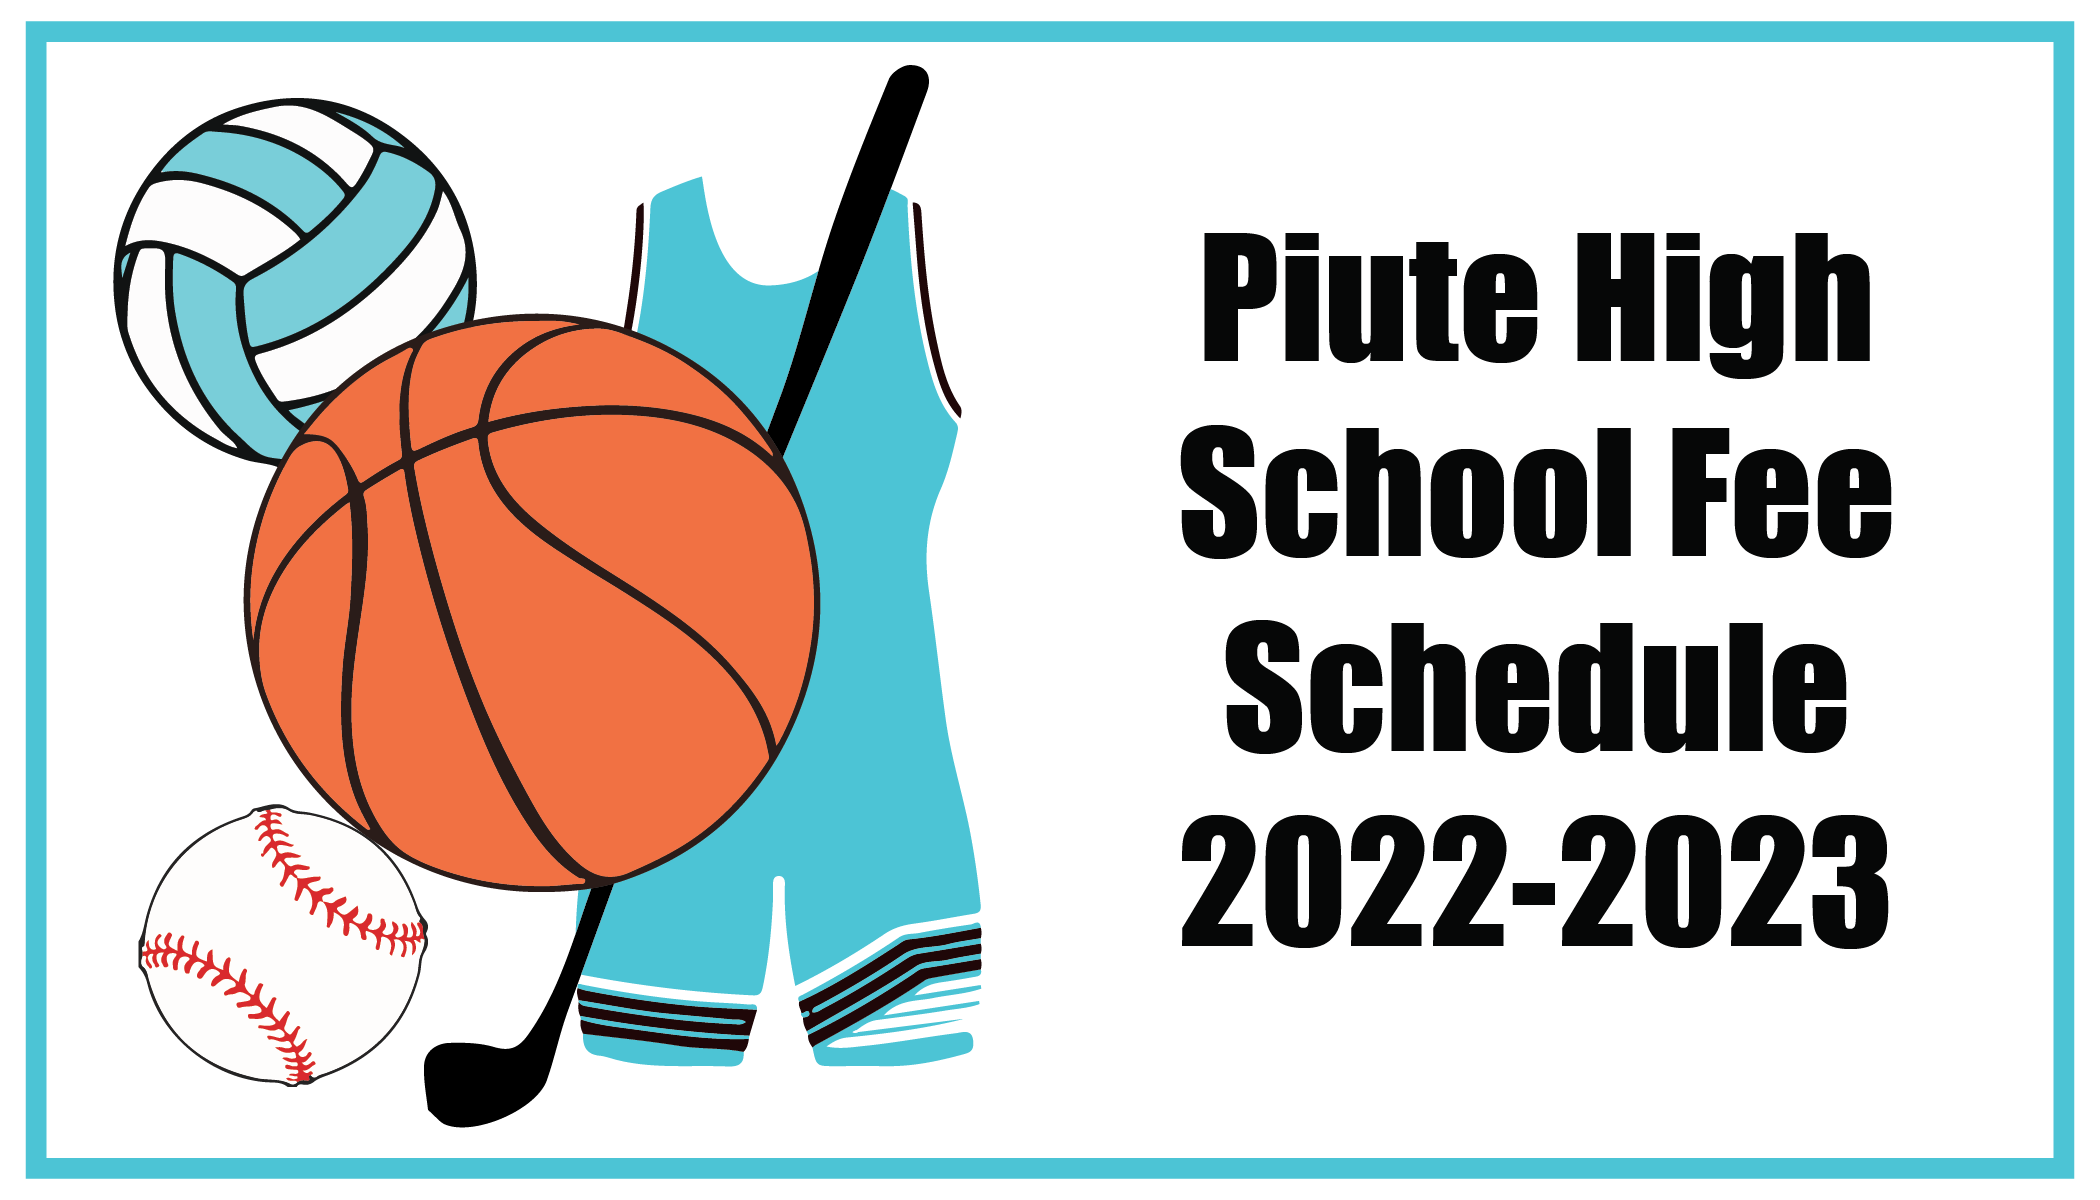 Piute High School Fee Schedule 2022-2023